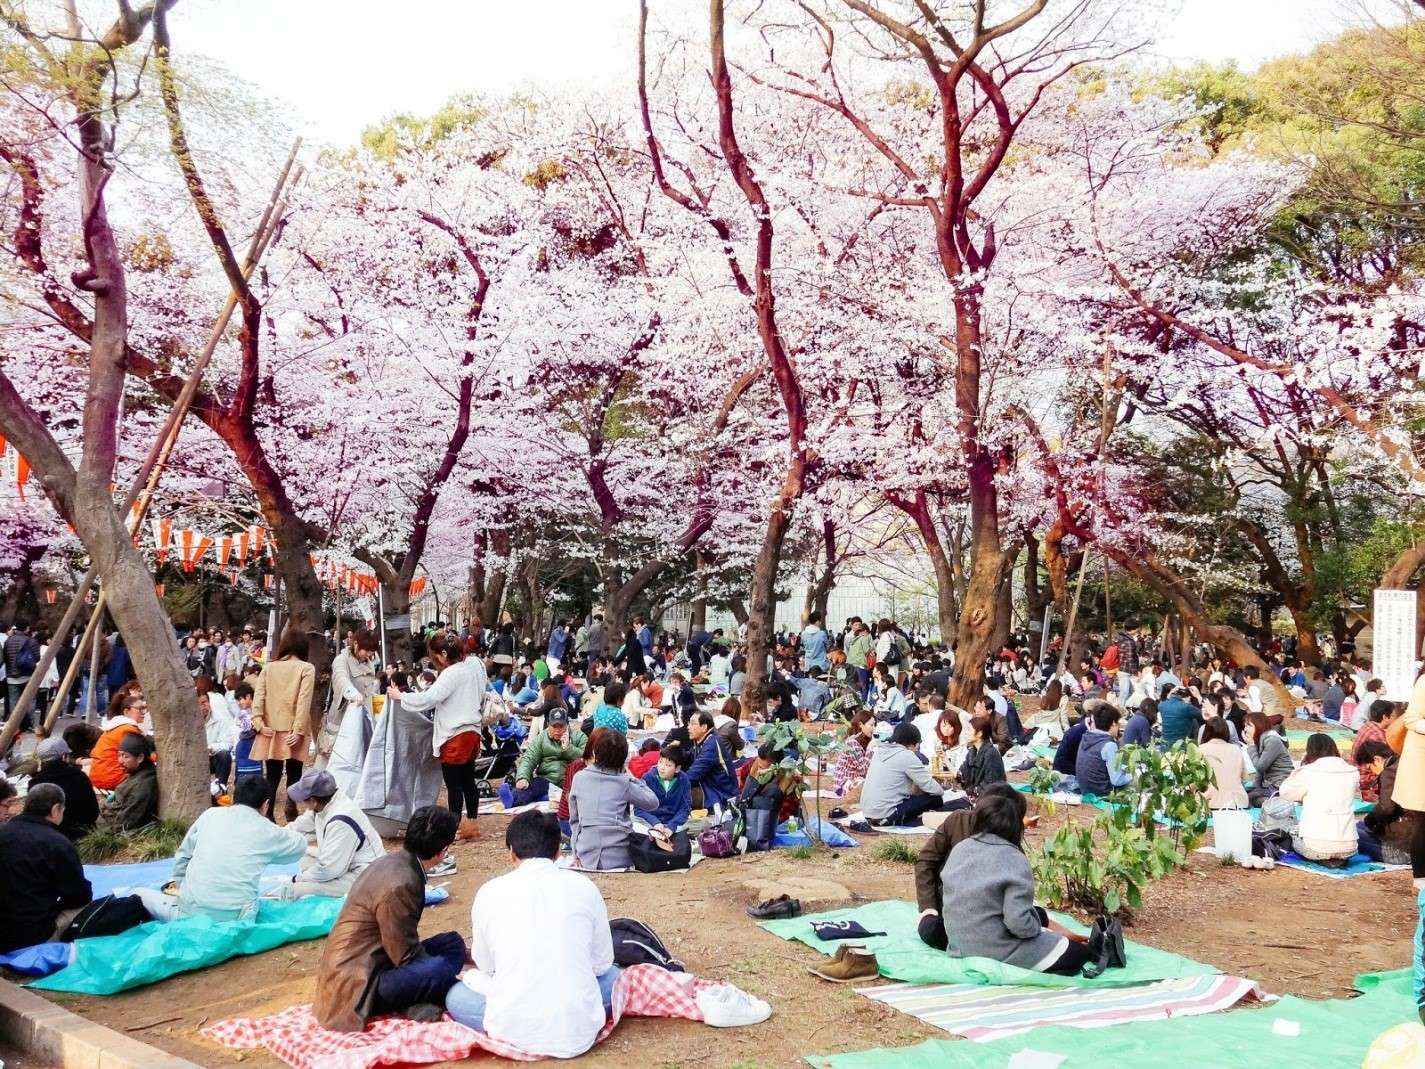 Du lịch Nhật Bản tháng 3 đón chào những lễ hội vui tưng bừng!